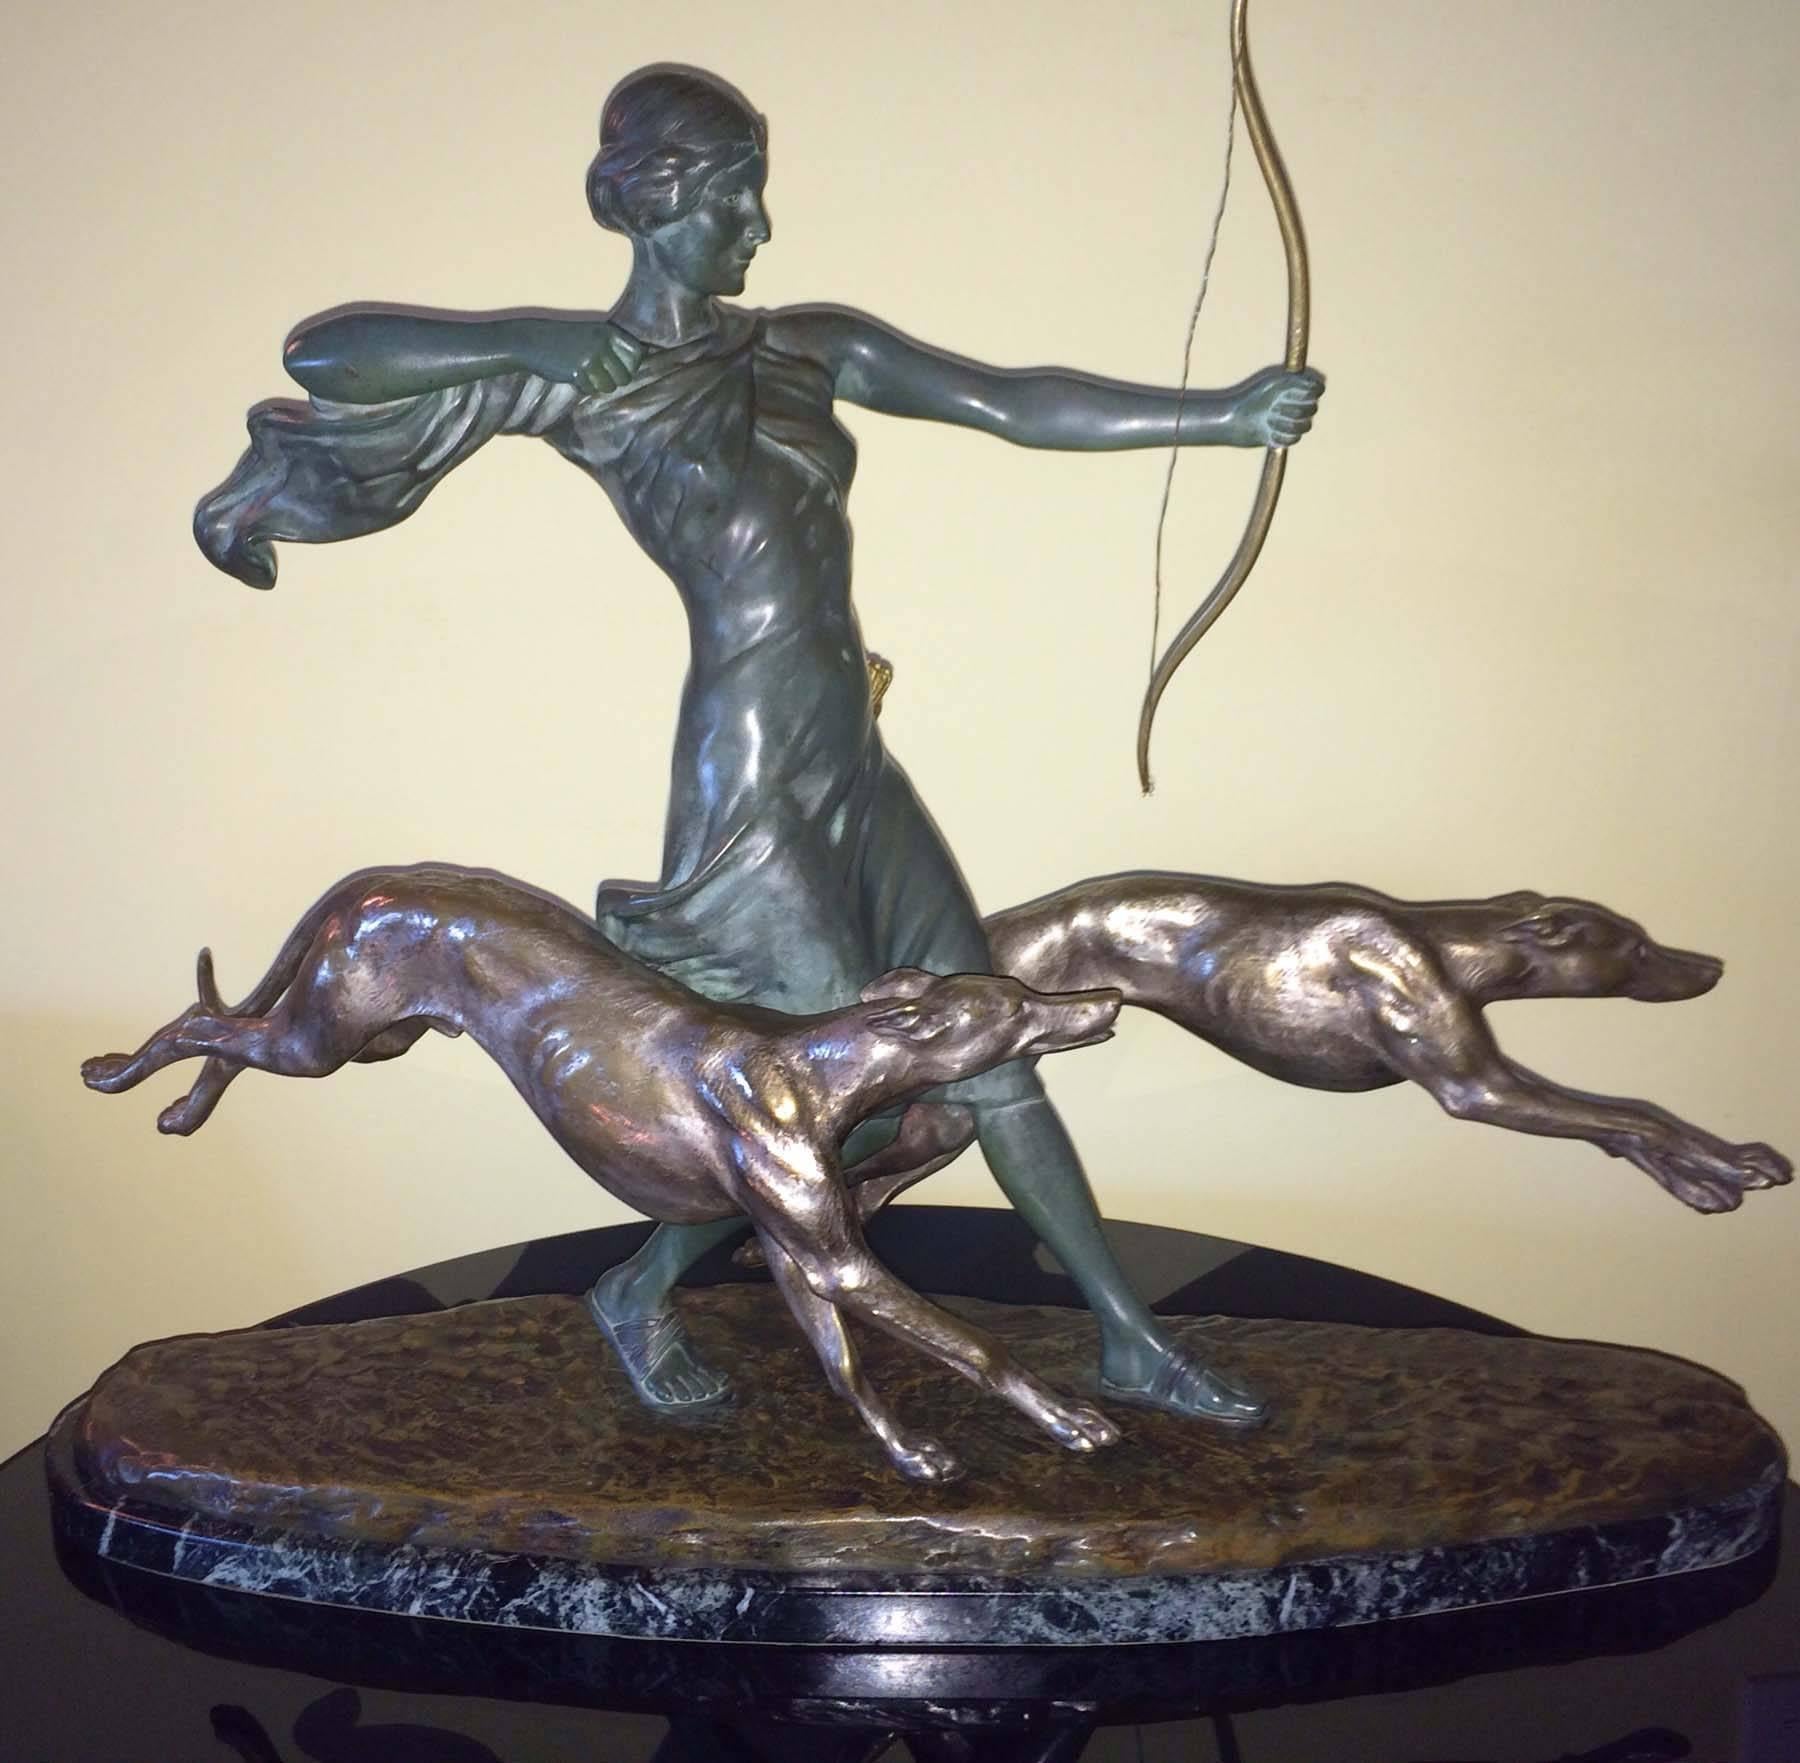 L. Riche Figurative Sculpture - Diana the Hunter